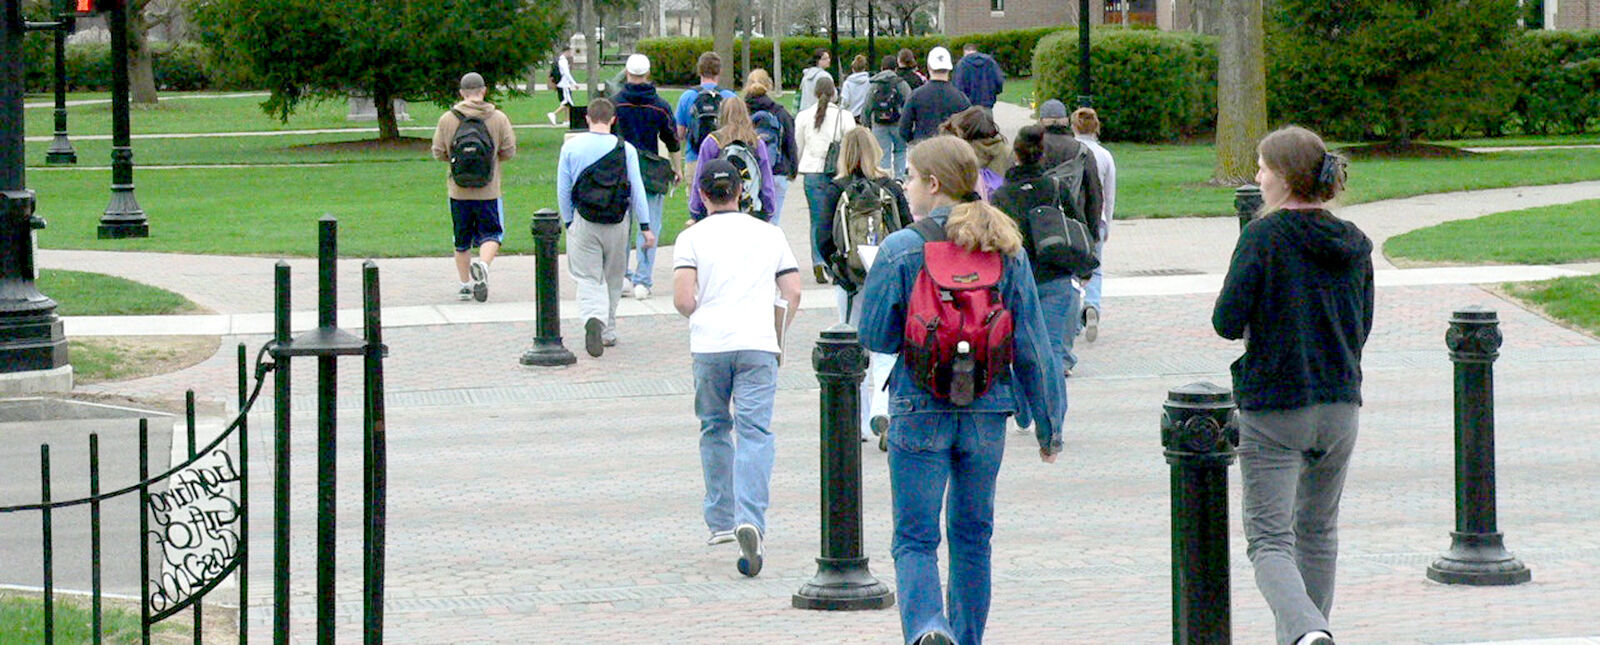 一大群下课的学生走过公园广场 